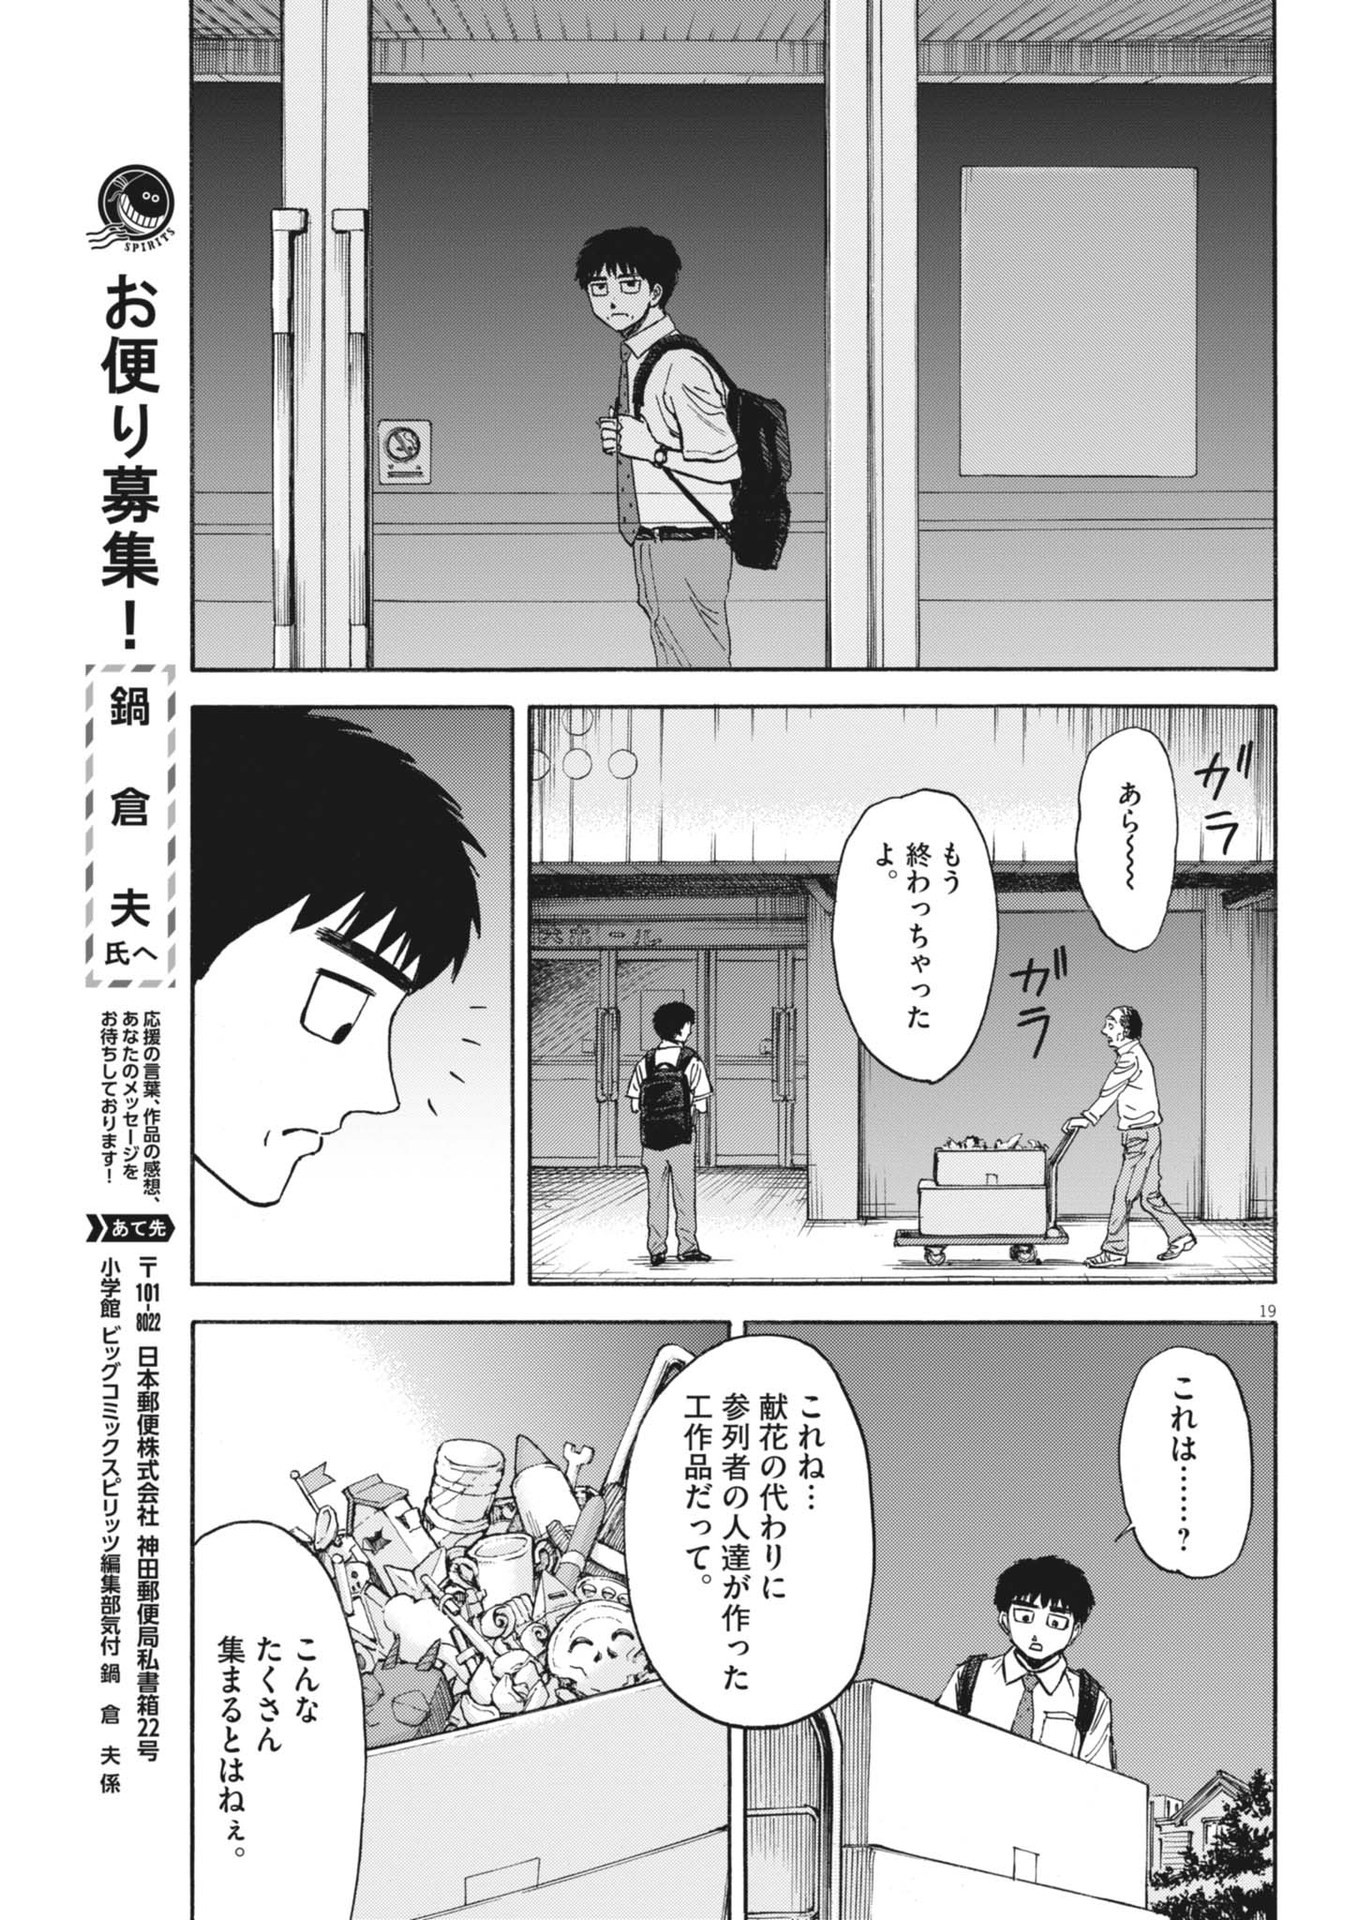 Robou no Fujii – Idai Naru Bonjin kara no Tayori - Chapter 27 - Page 19